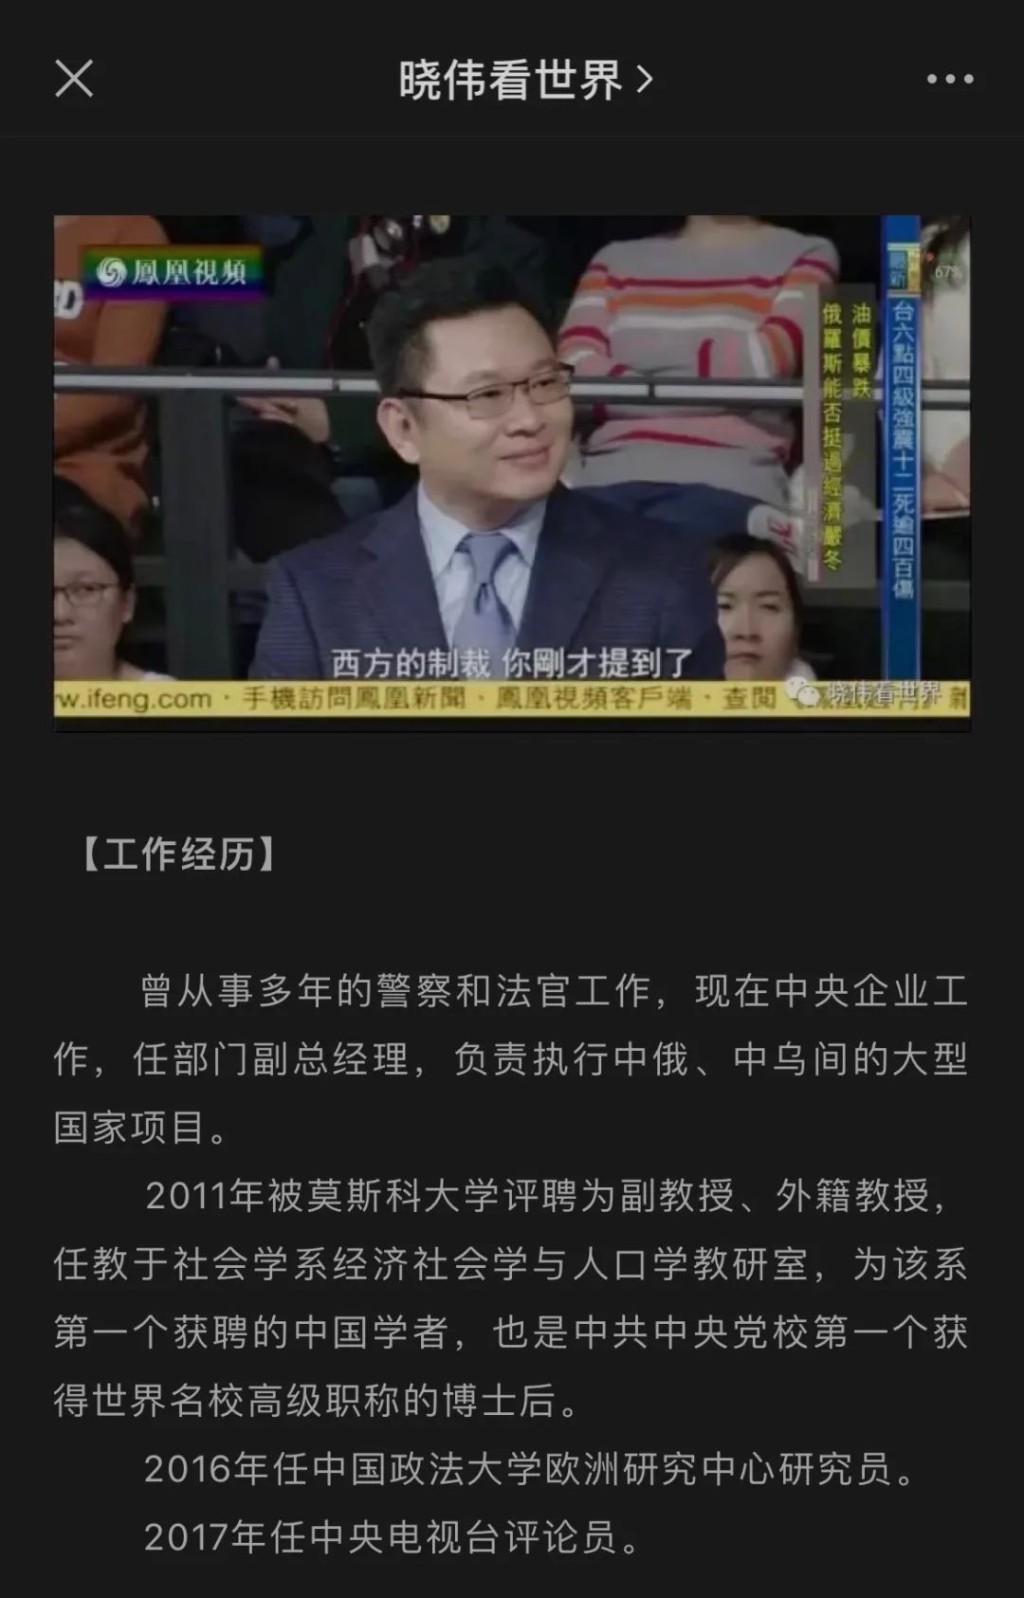 王曉偉成為鳳凰衛視、東方衛視等上百家中外媒體的常客。互聯網